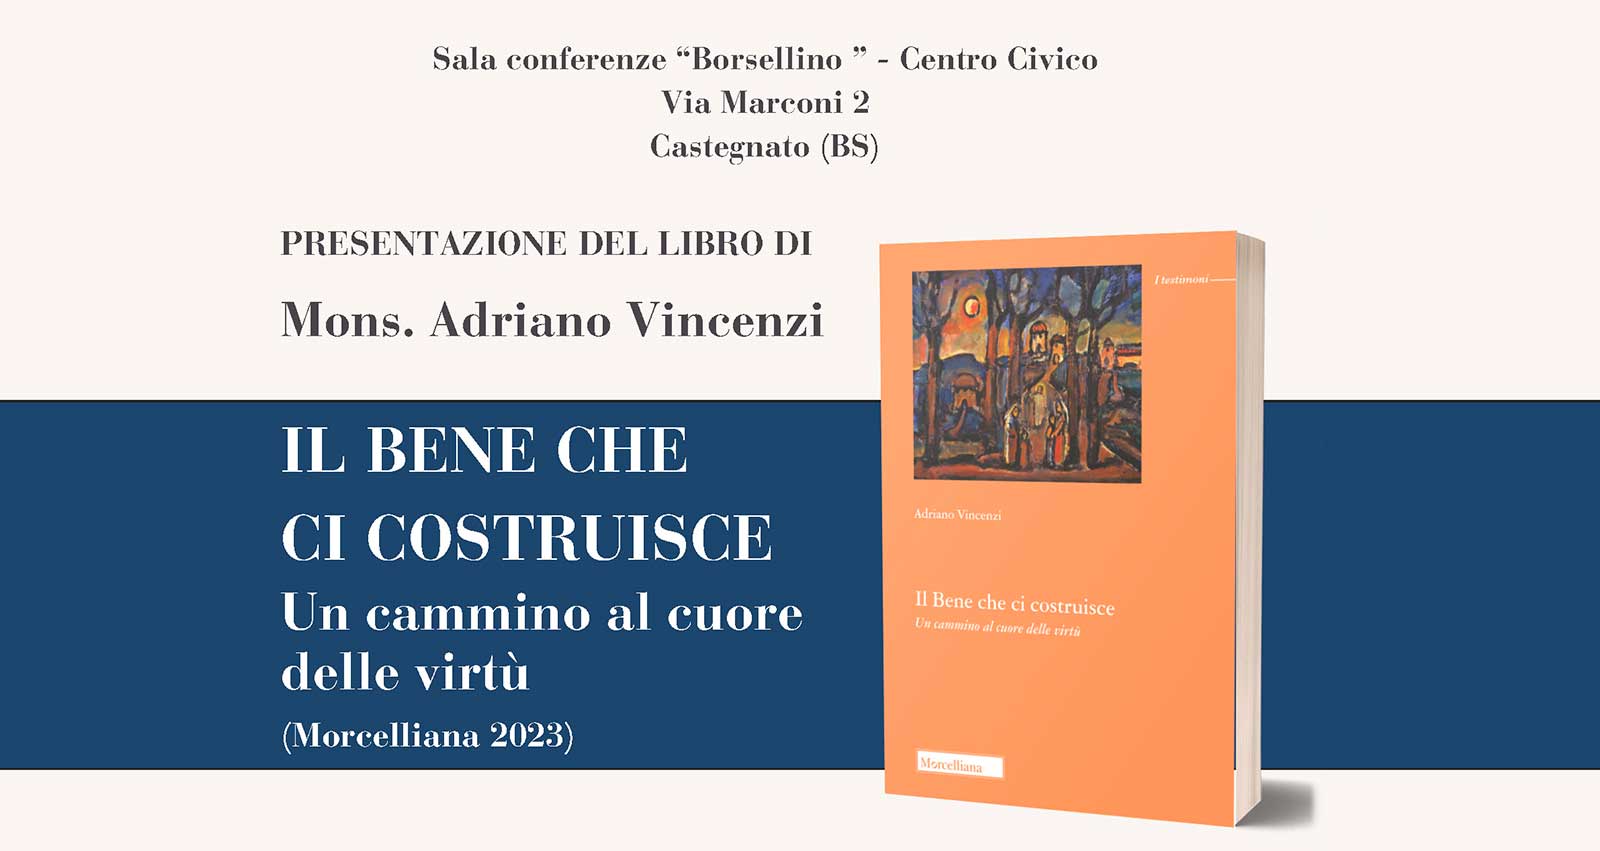 Presentazione del libro di Mons. Adriano Vincenzi